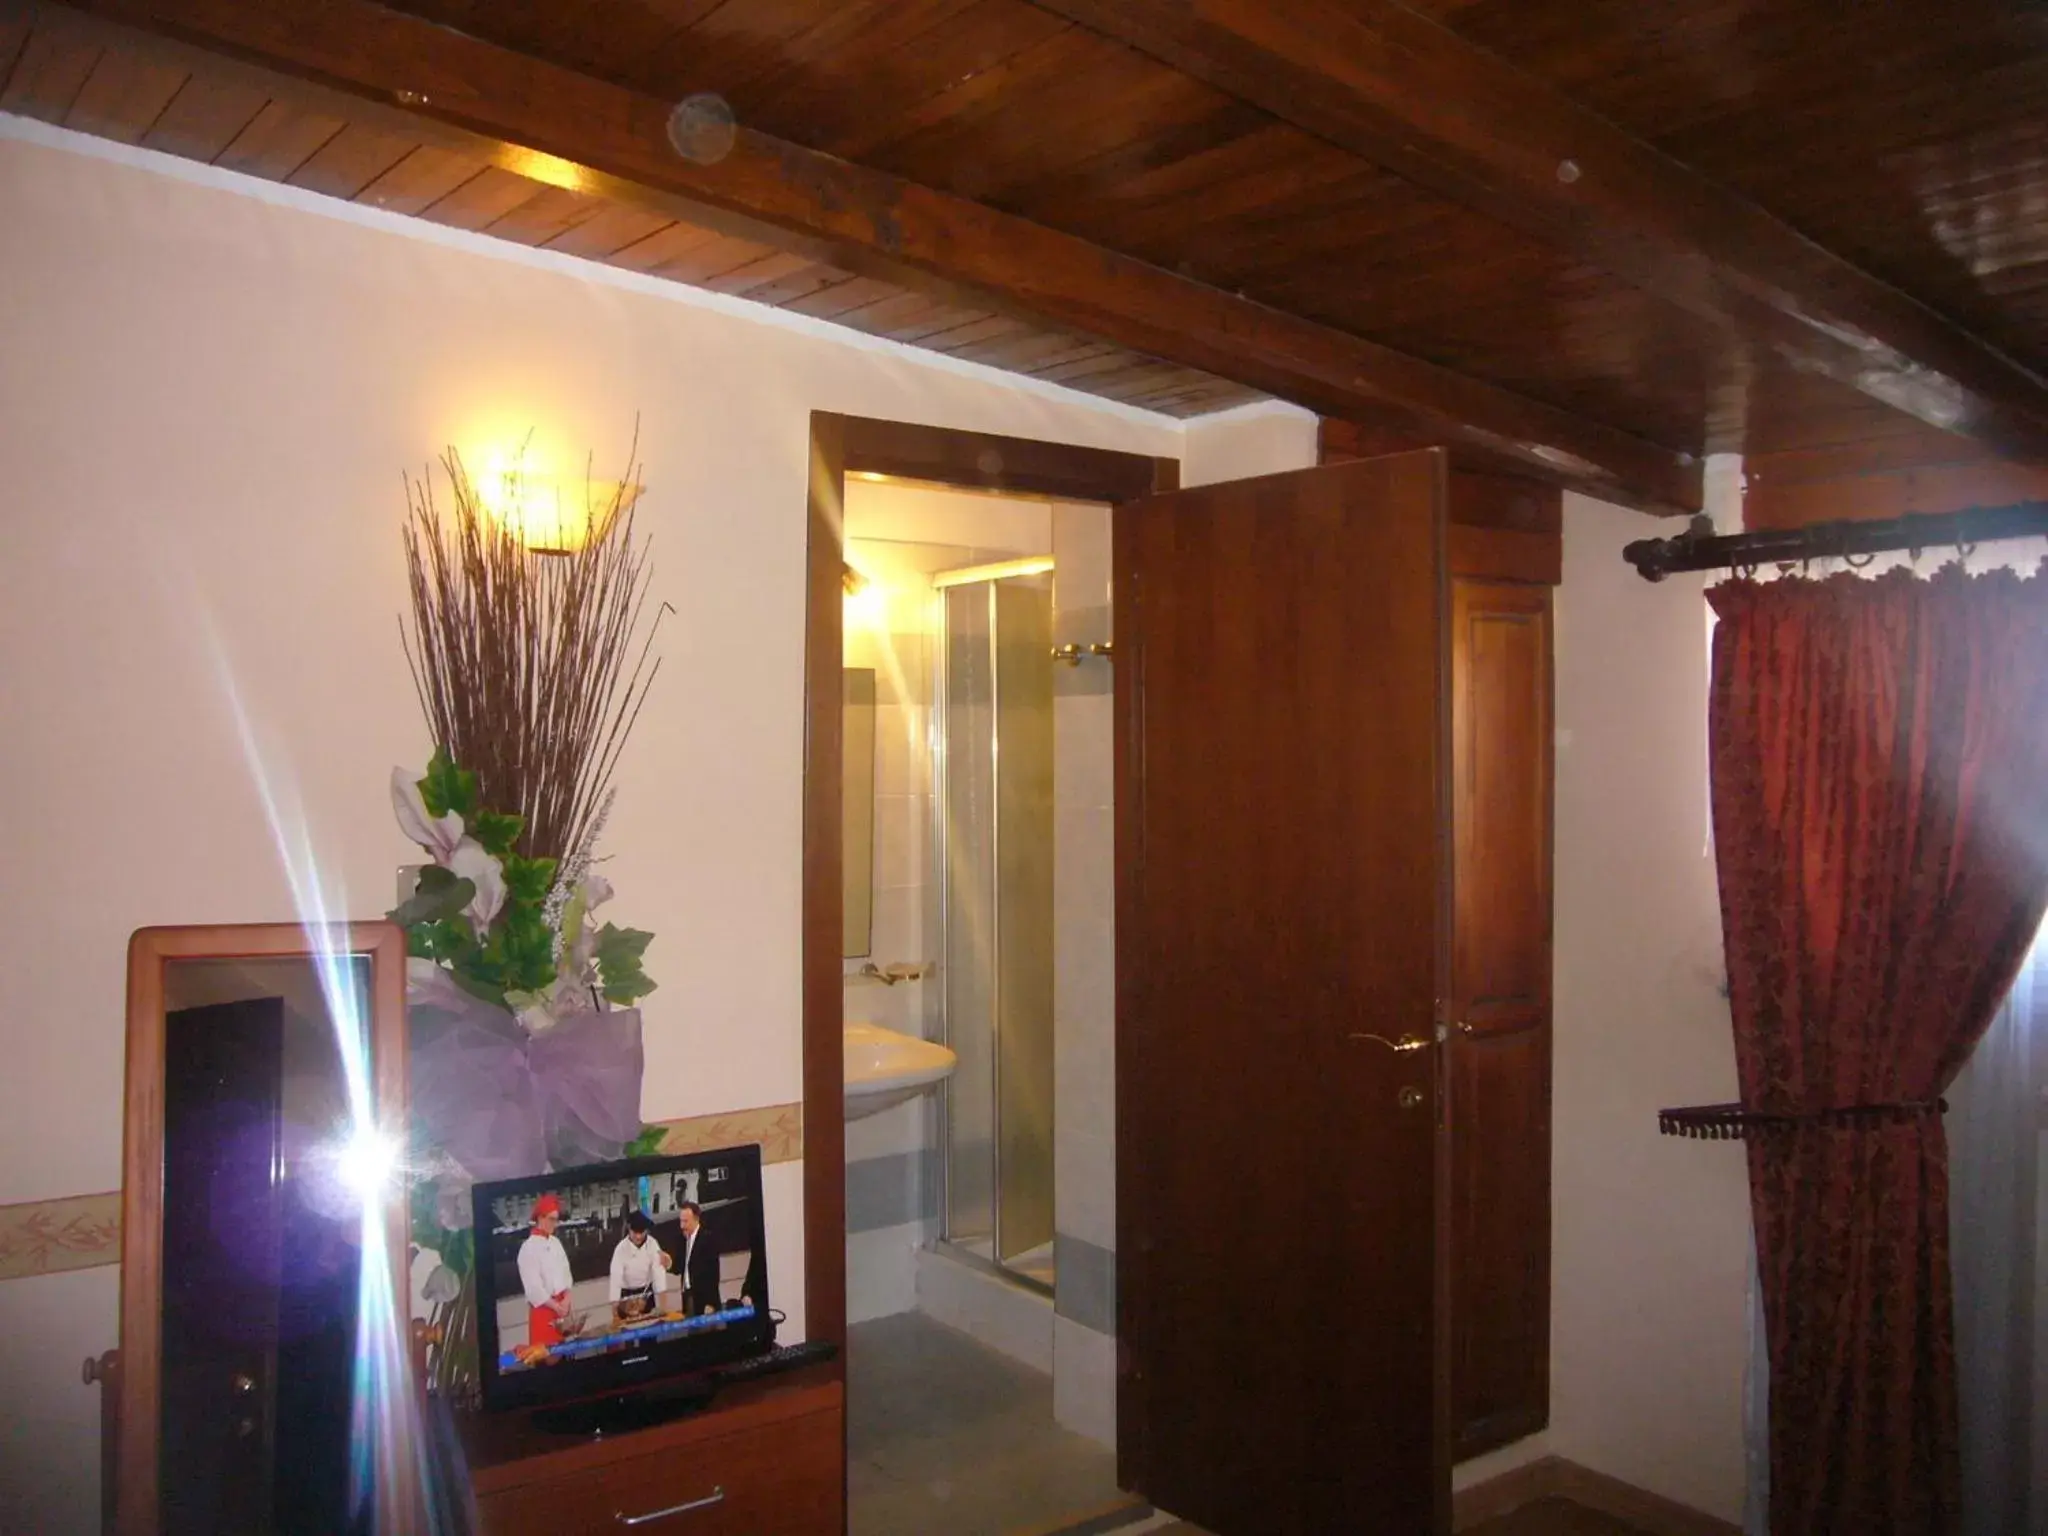 Bedroom, Bathroom in Villa Altieri